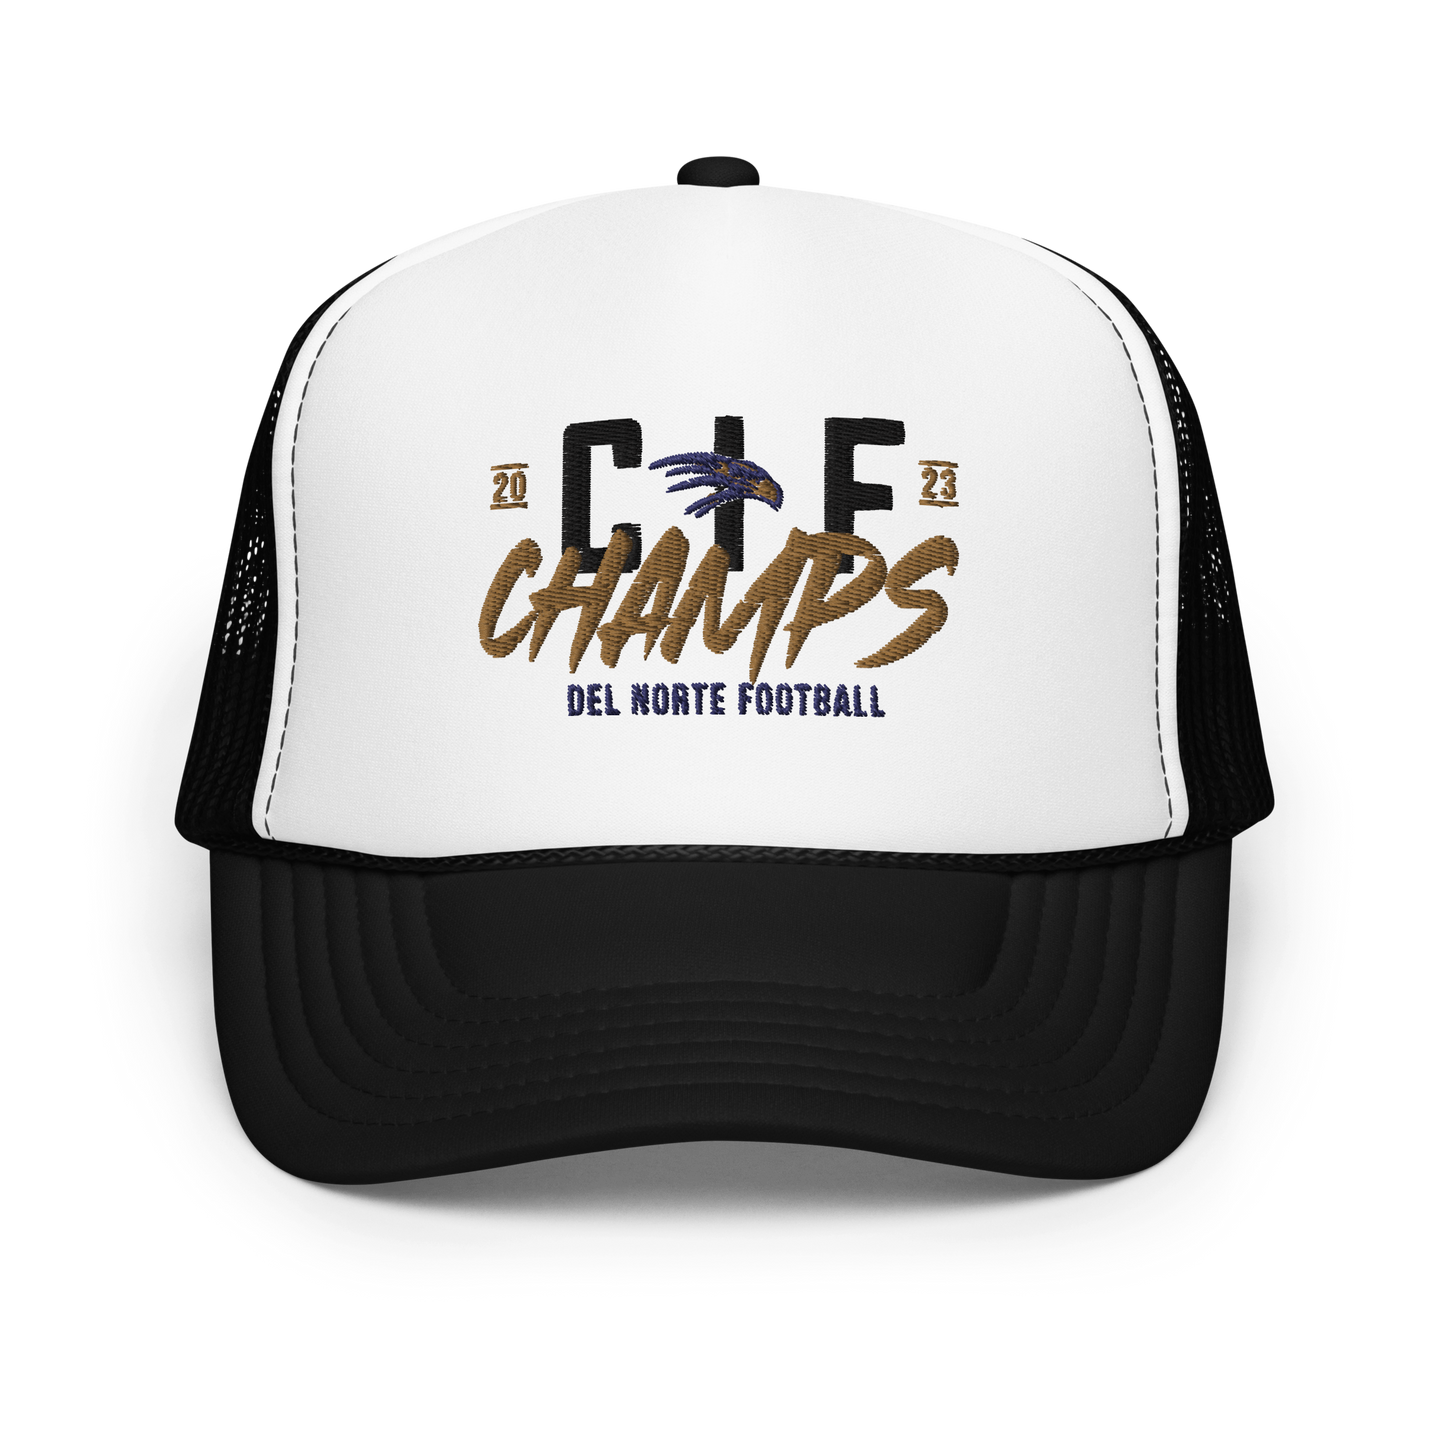 Del Norte Champs Foam trucker hat